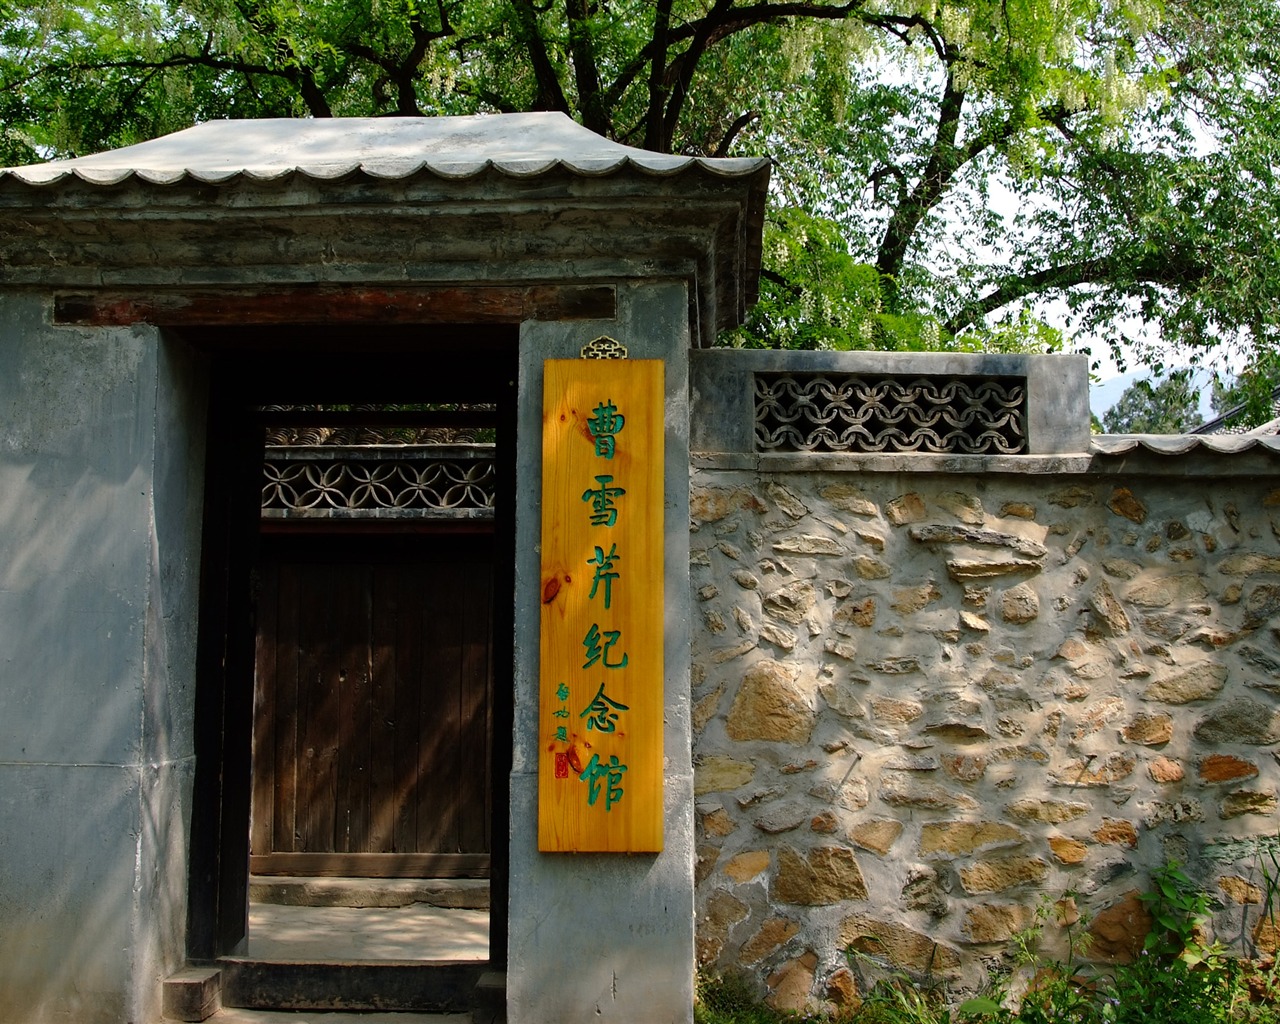 Xiangshan jardín principios del verano (obras barras de refuerzo) #17 - 1280x1024